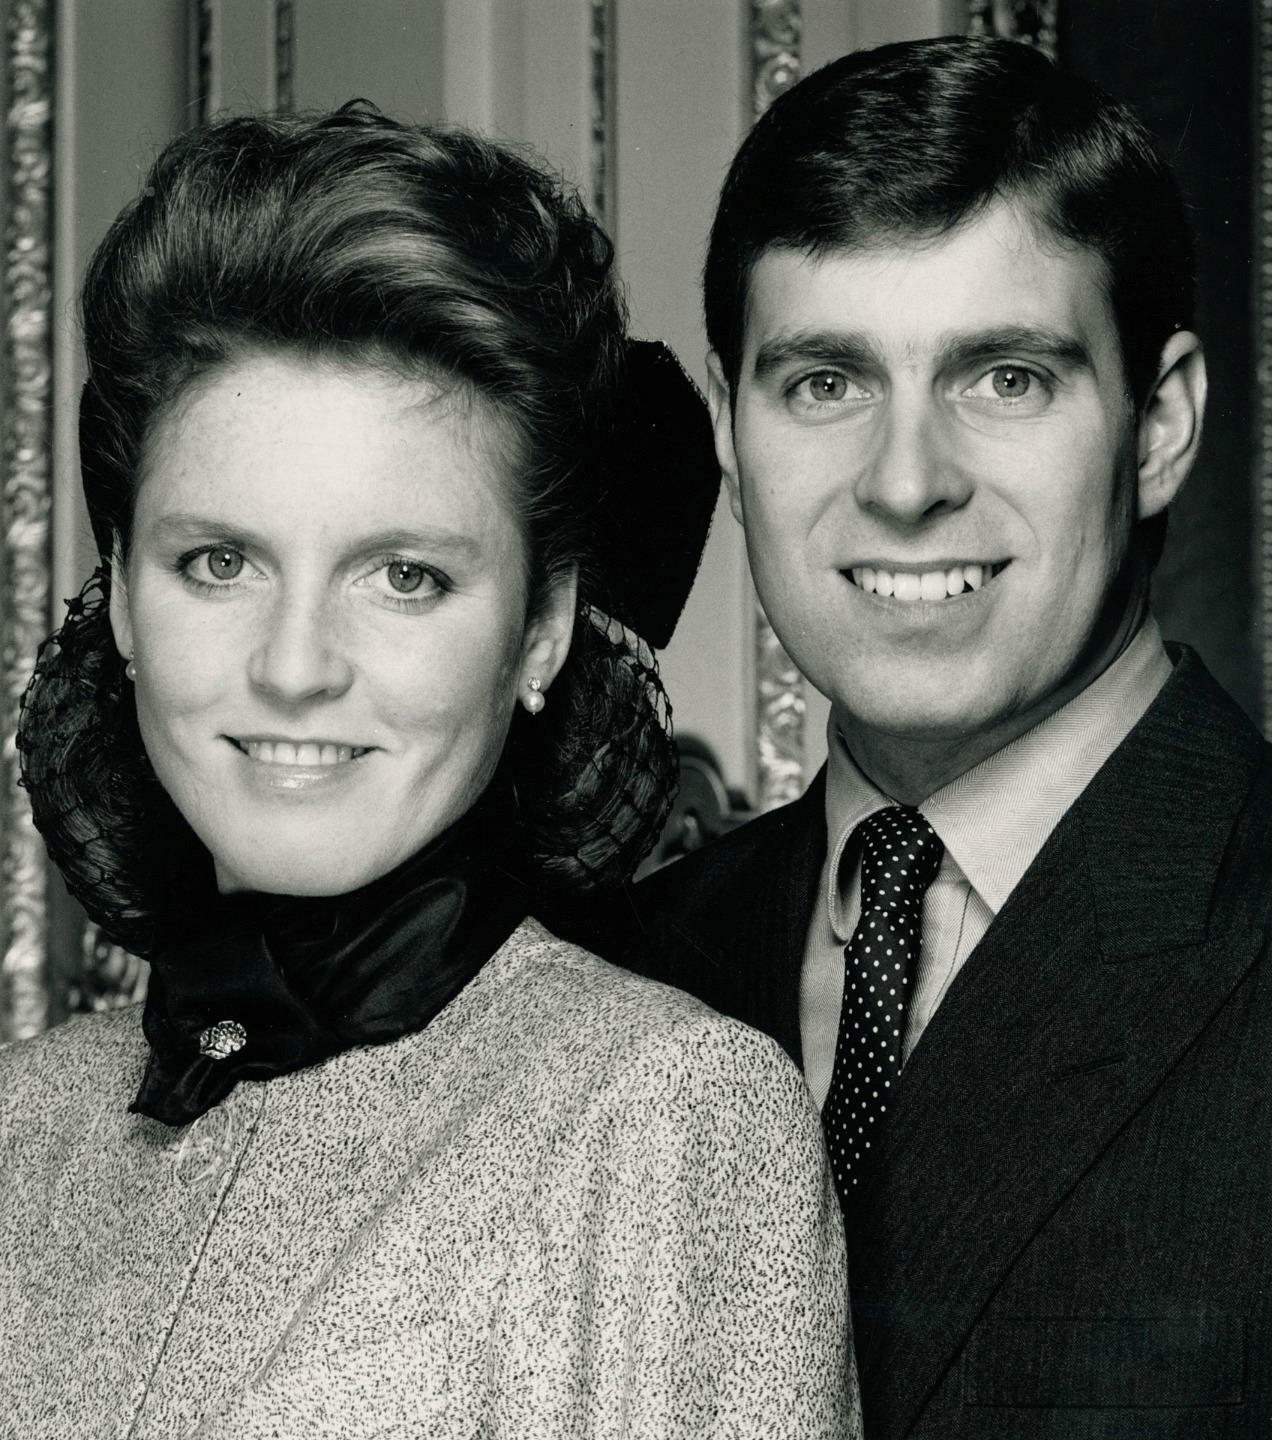 1987 The Duke & Duchess of York Photo by ALBERT WATSON